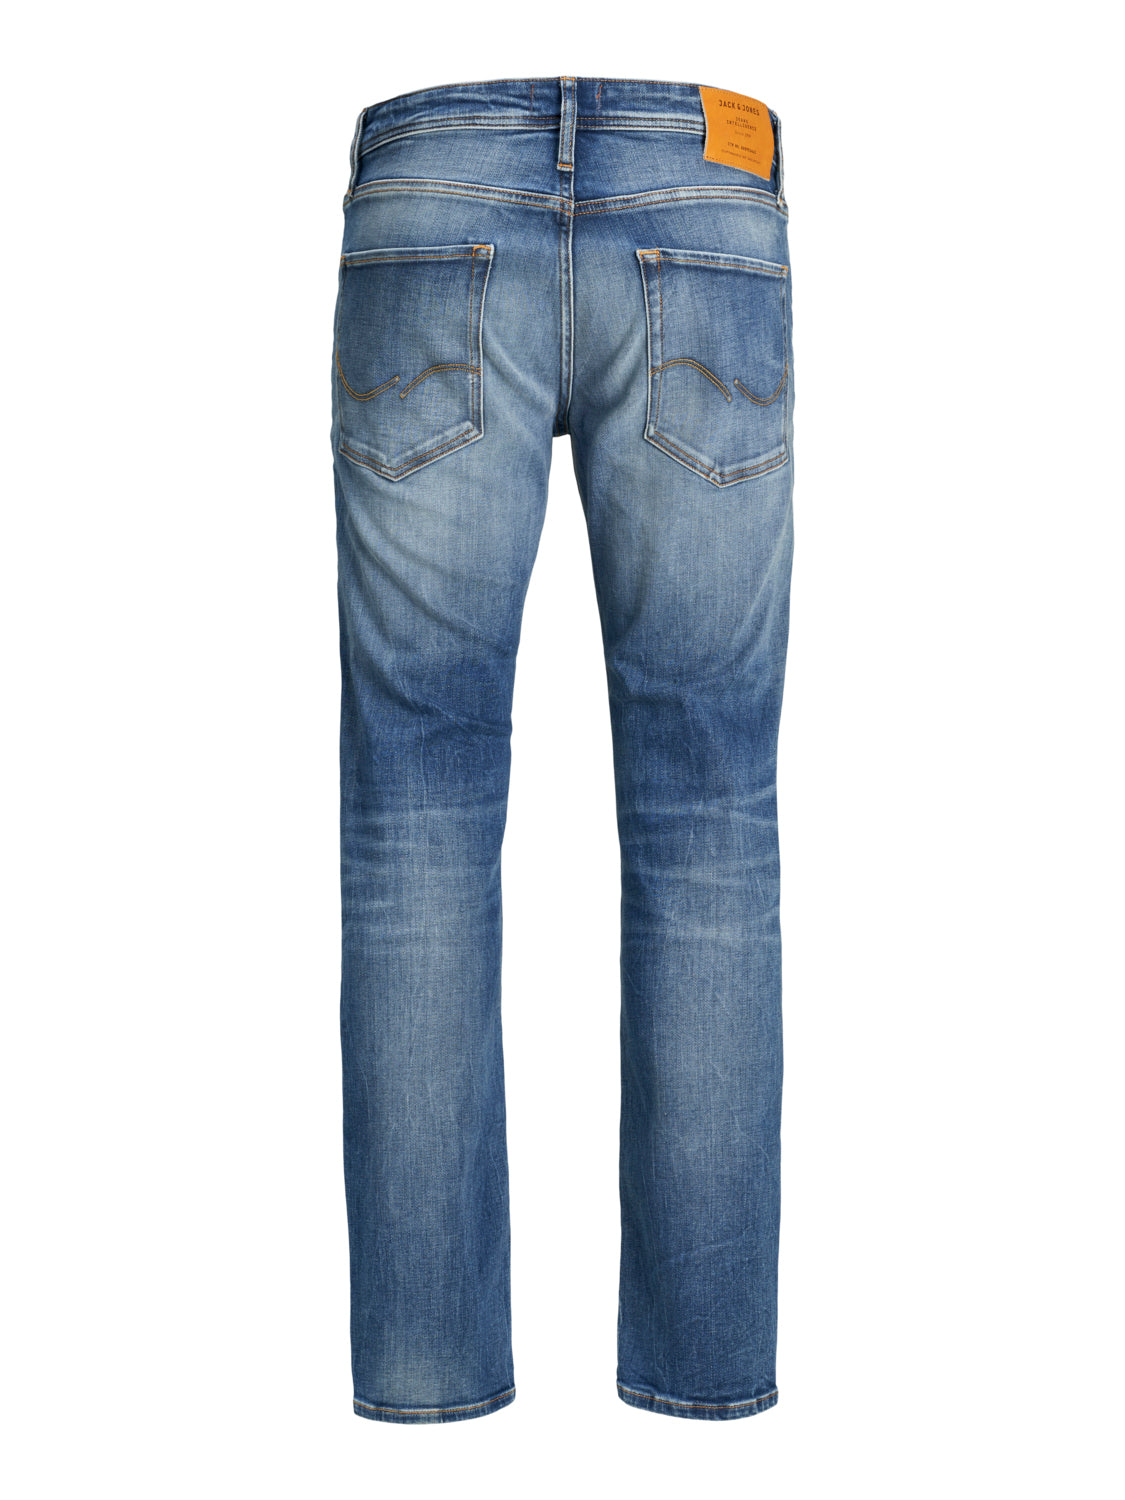 JJIMIKE Jeans - blue denim